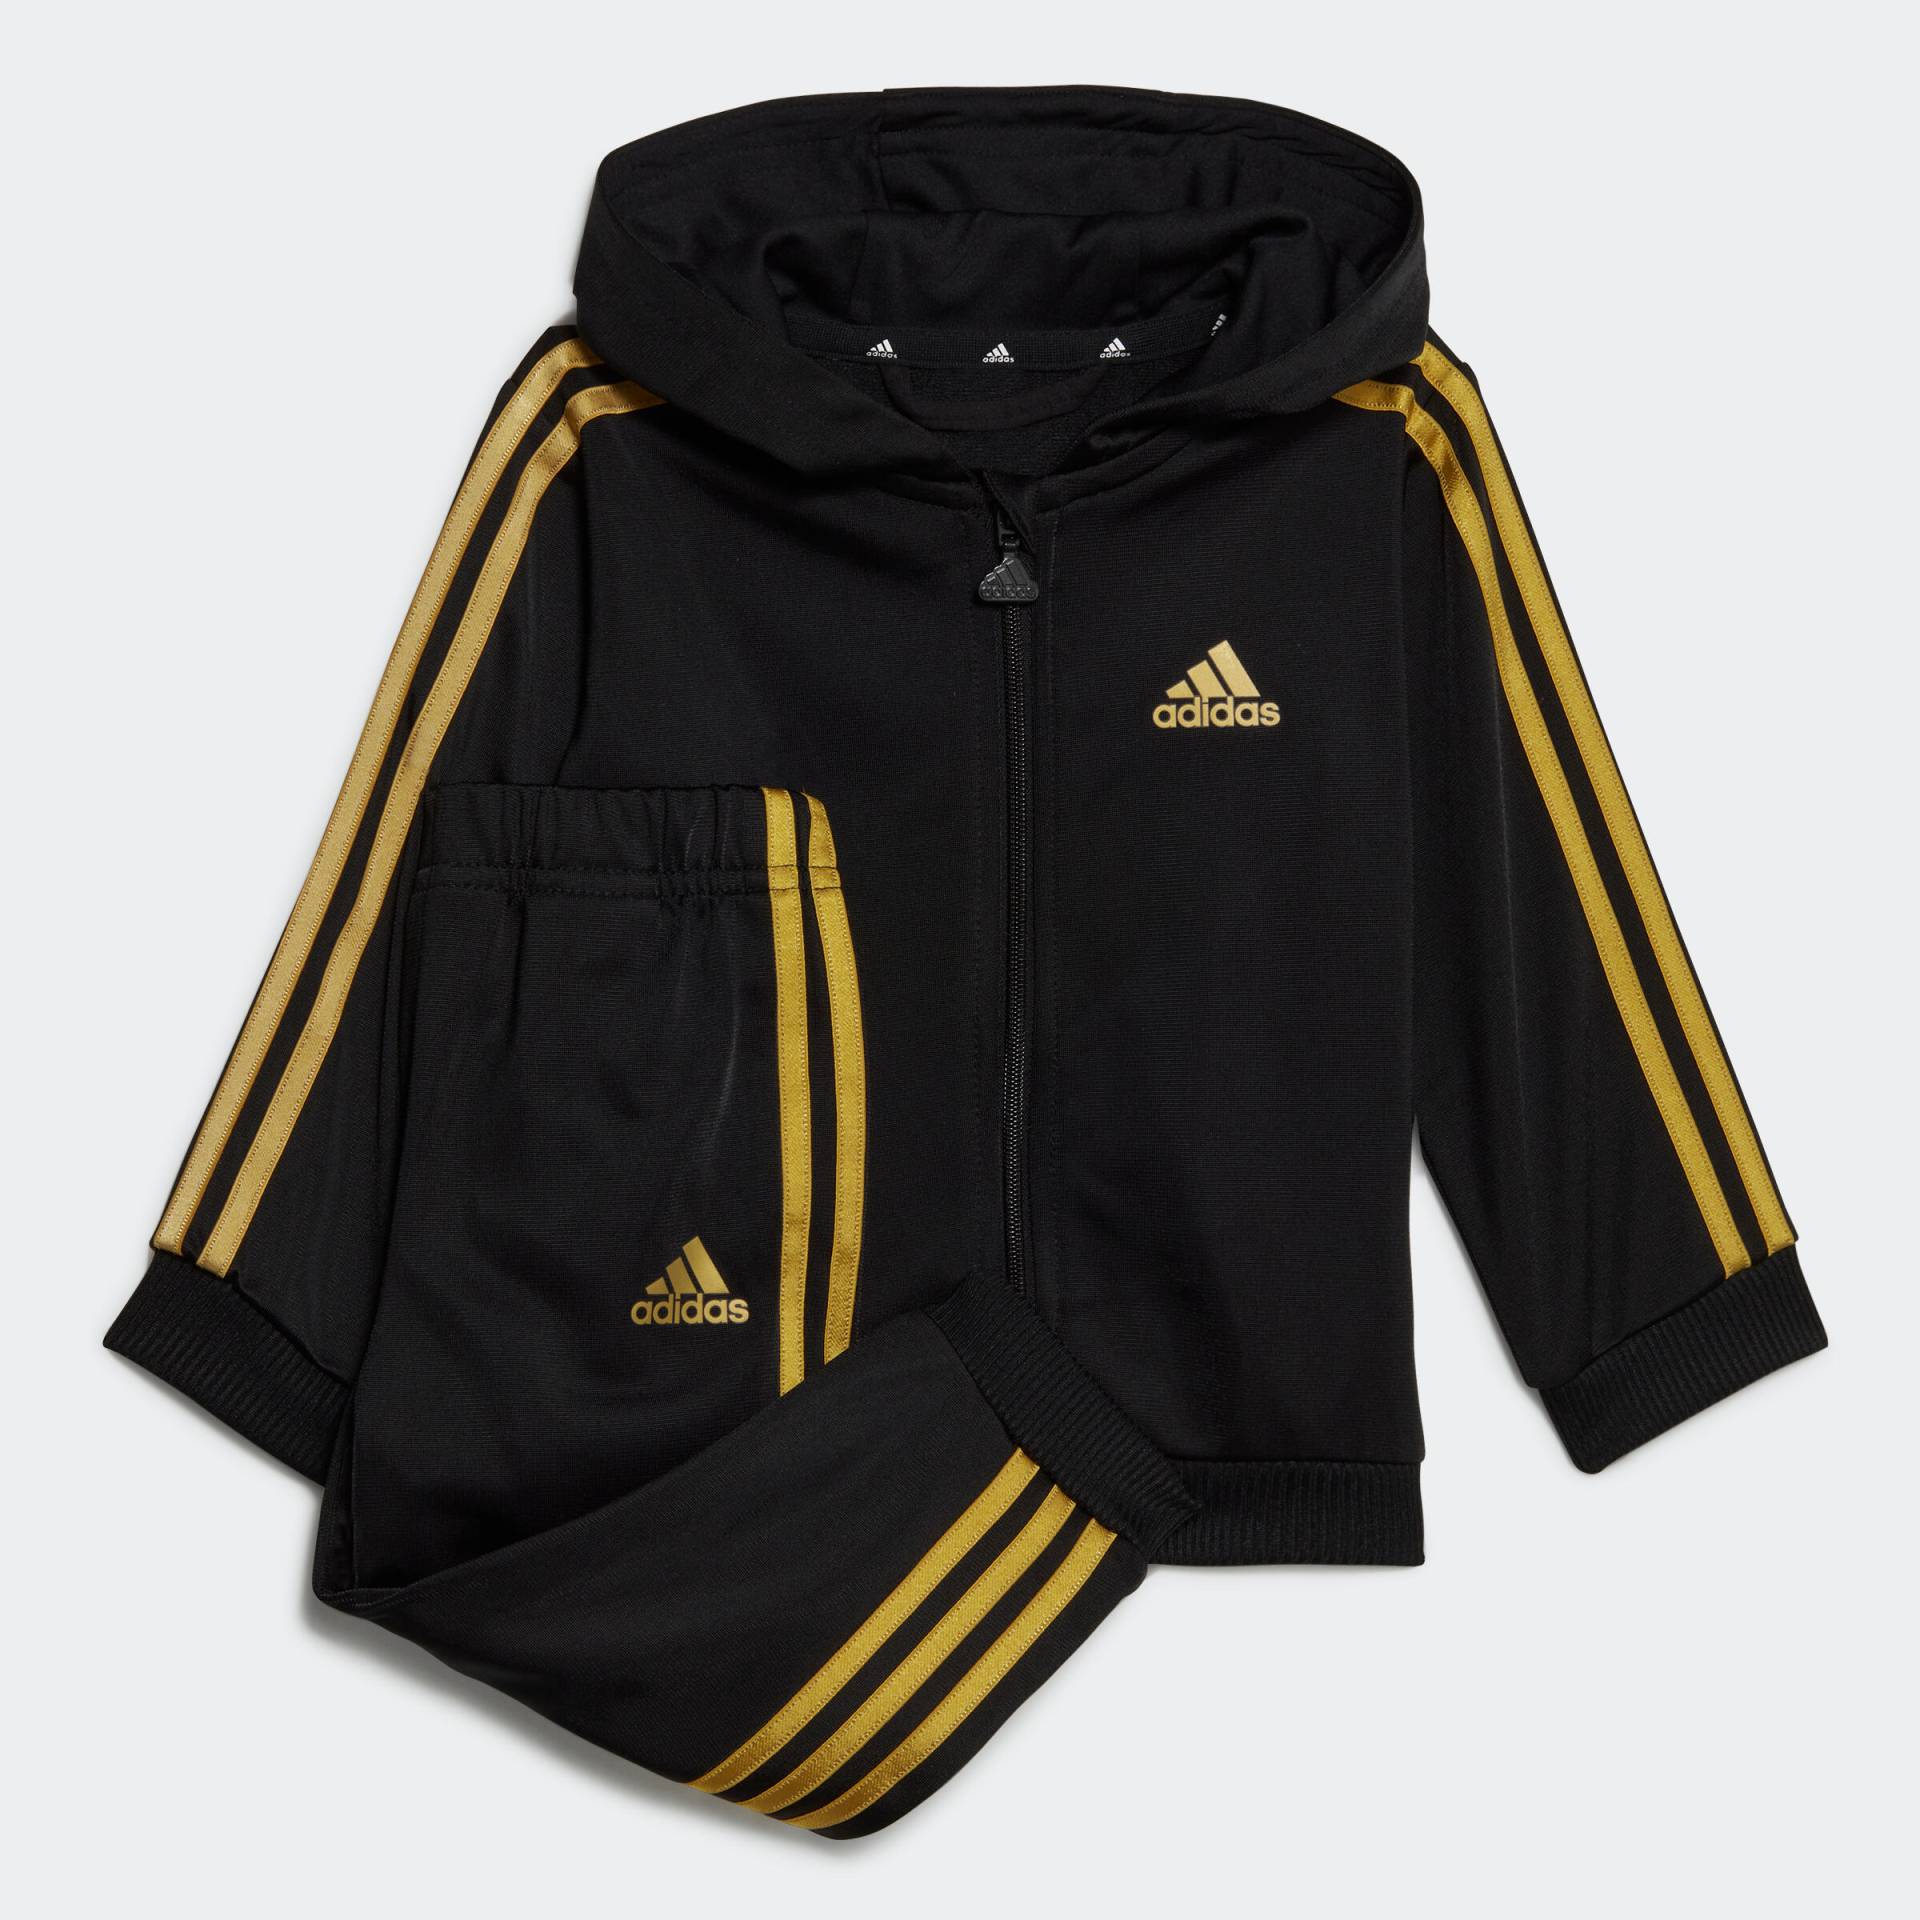 ADIDAS Trainingsanzug Baby - schwarz/gold von Adidas